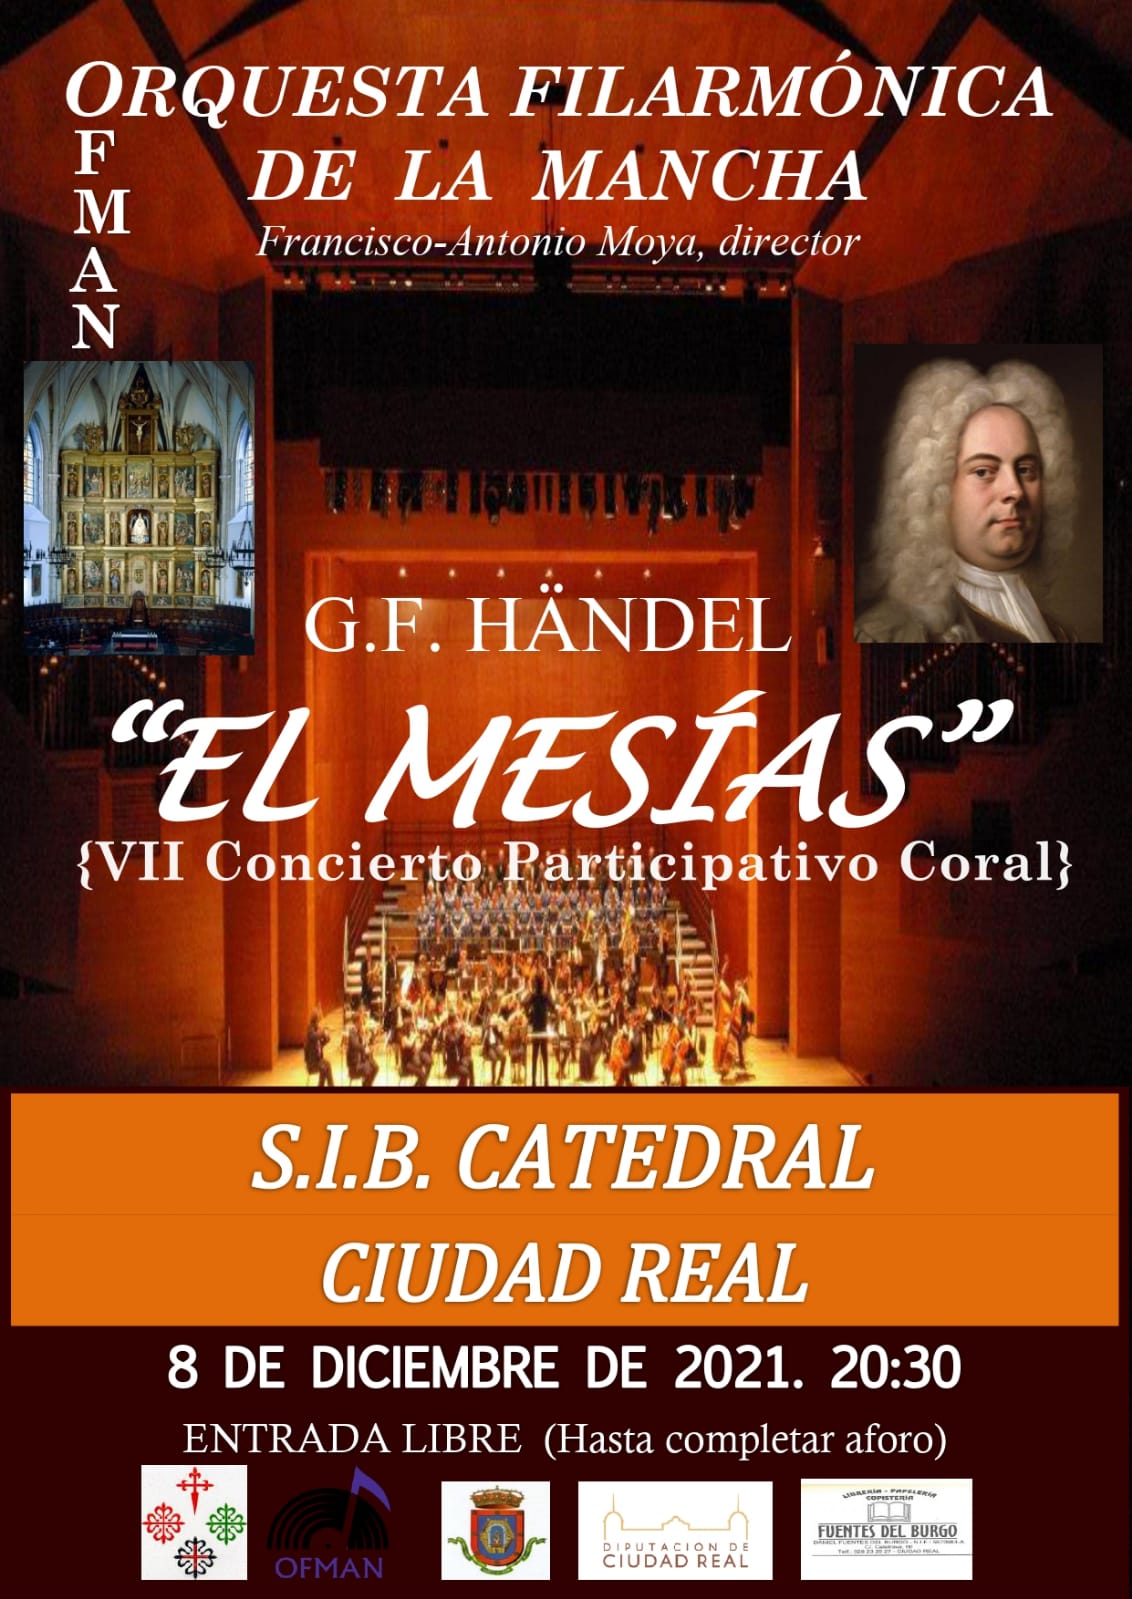 Cartel publicatario de "El Mesías" en la catedral de Ciudad Real